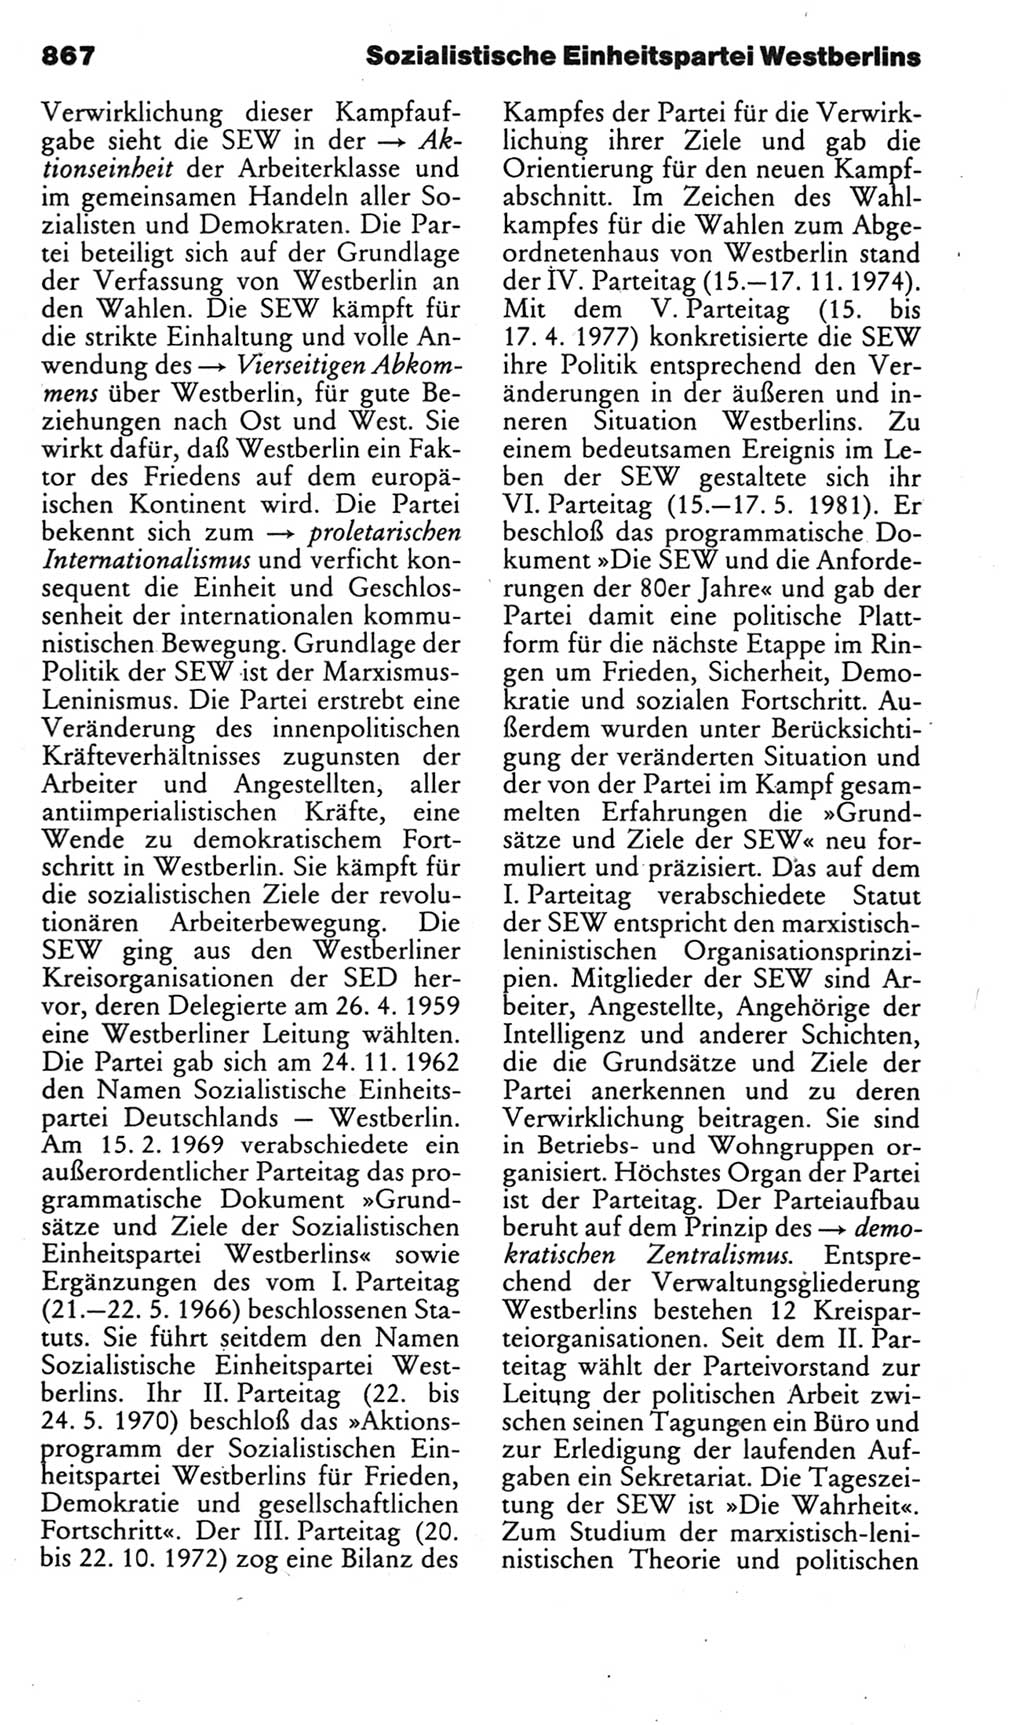 Kleines politisches Wörterbuch [Deutsche Demokratische Republik (DDR)] 1985, Seite 867 (Kl. pol. Wb. DDR 1985, S. 867)